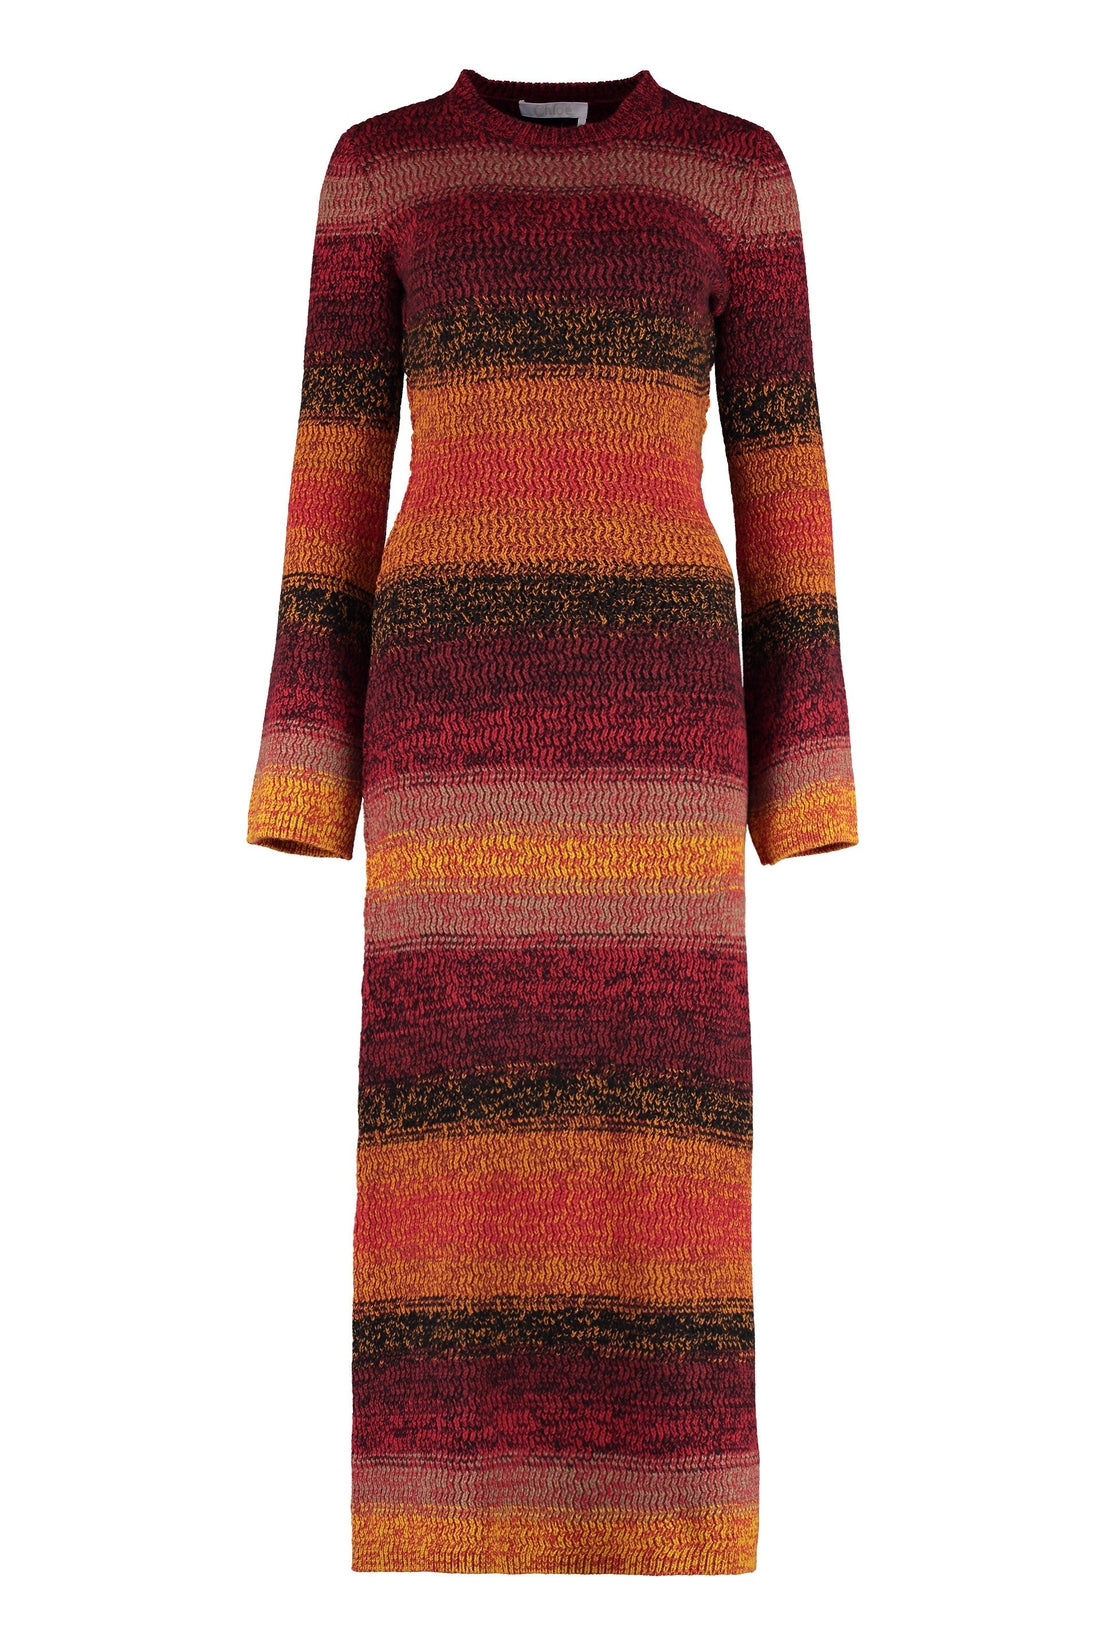 Chloé-OUTLET-SALE-Cashmere sweater-dress-ARCHIVIST